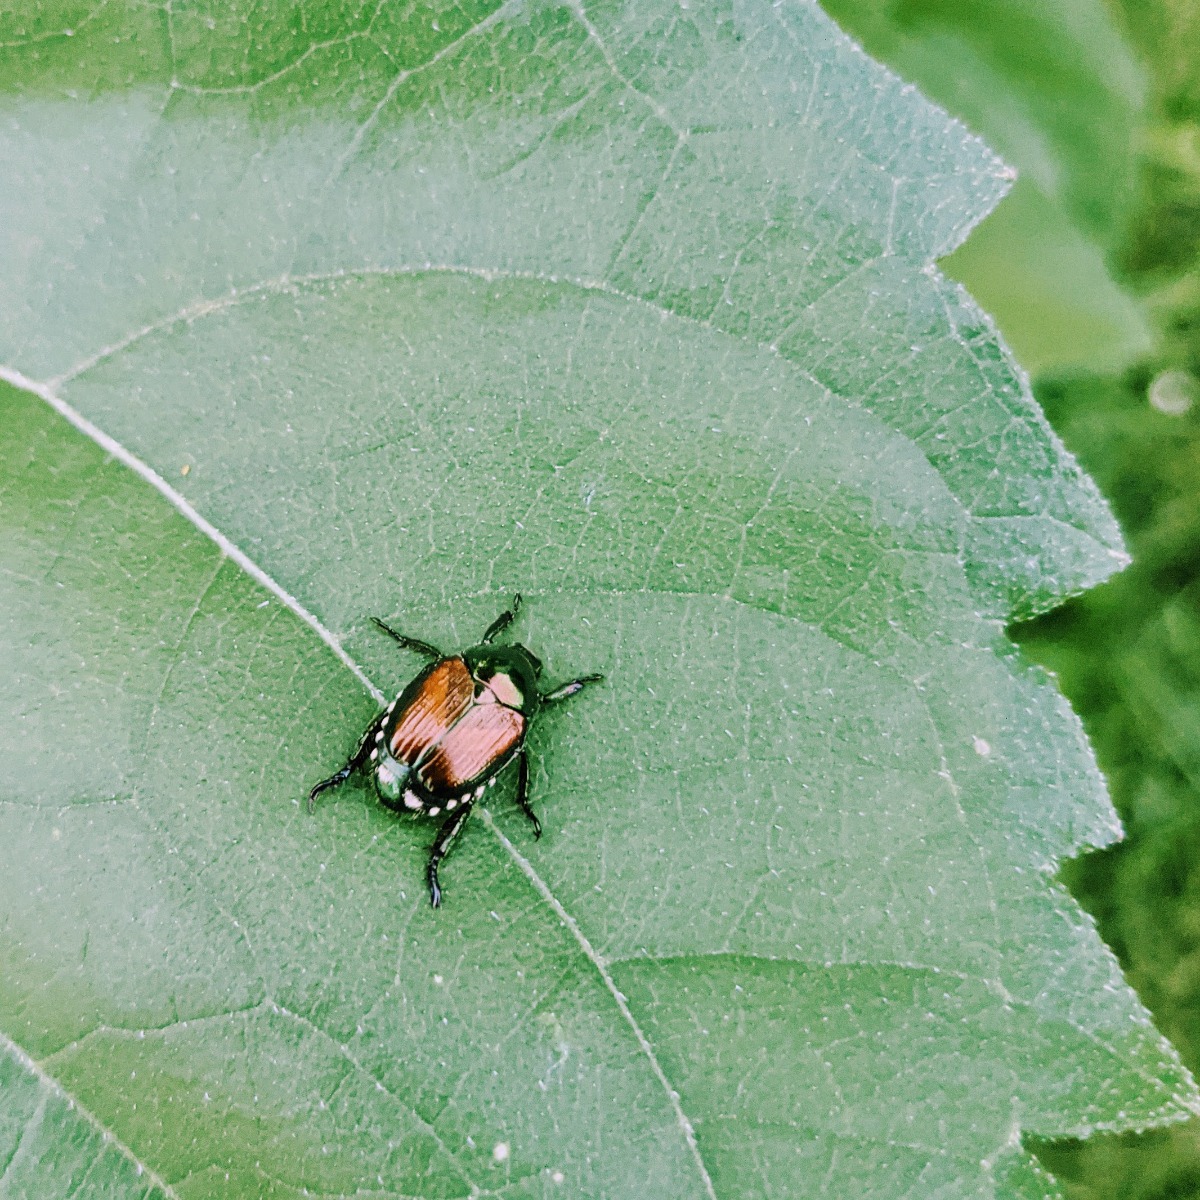 Japanese Beetle on a Sunflower Leaf